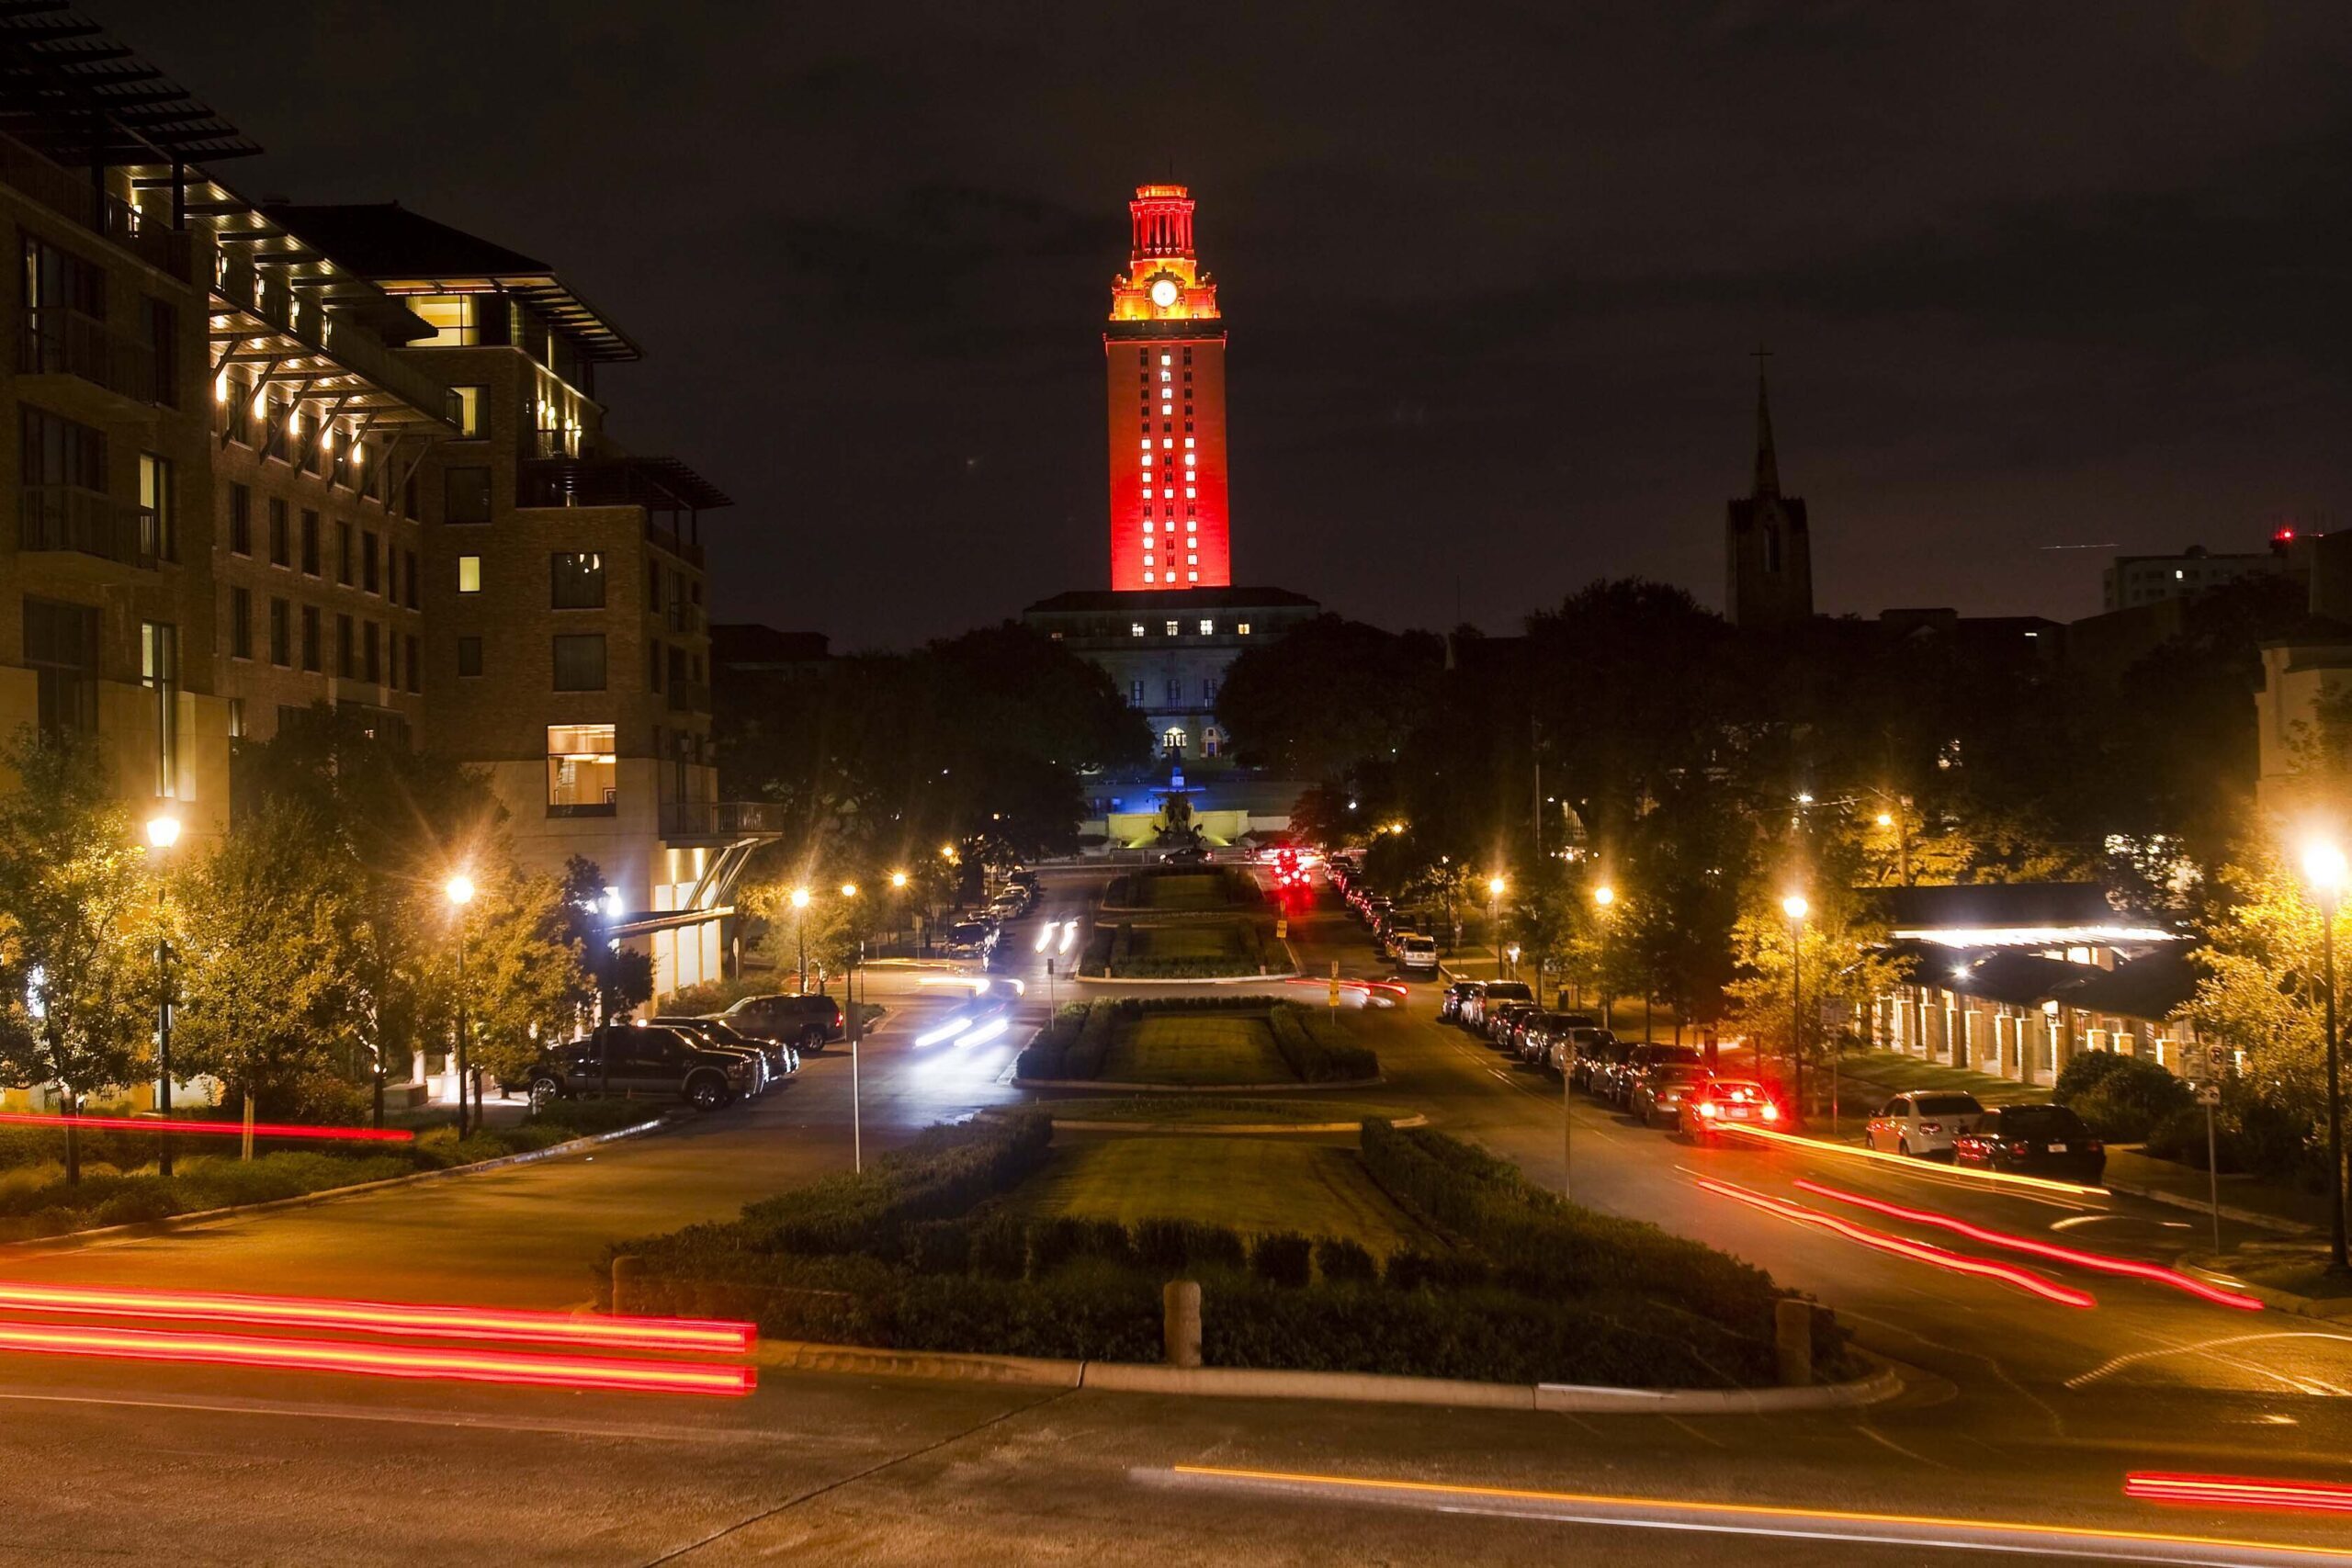 LIGHT THE TOWER: McCombs School of Business Centennial Celebration